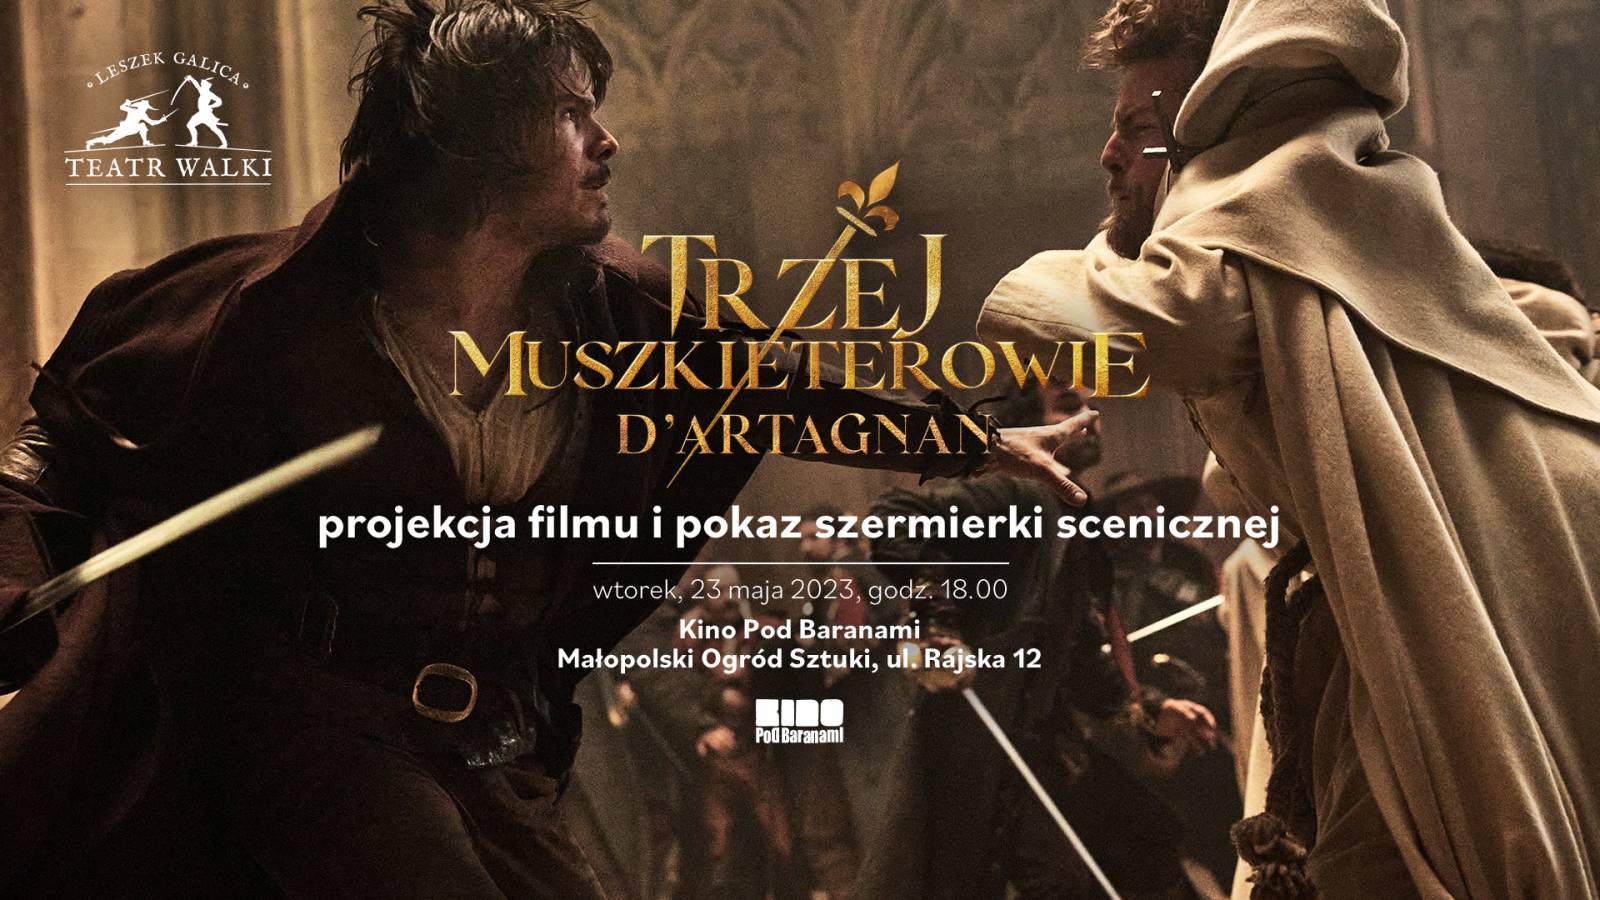 Trzej muszkieterowie: D'Artagnan  – projekcja filmu i pokaz szermierki scenicznej 